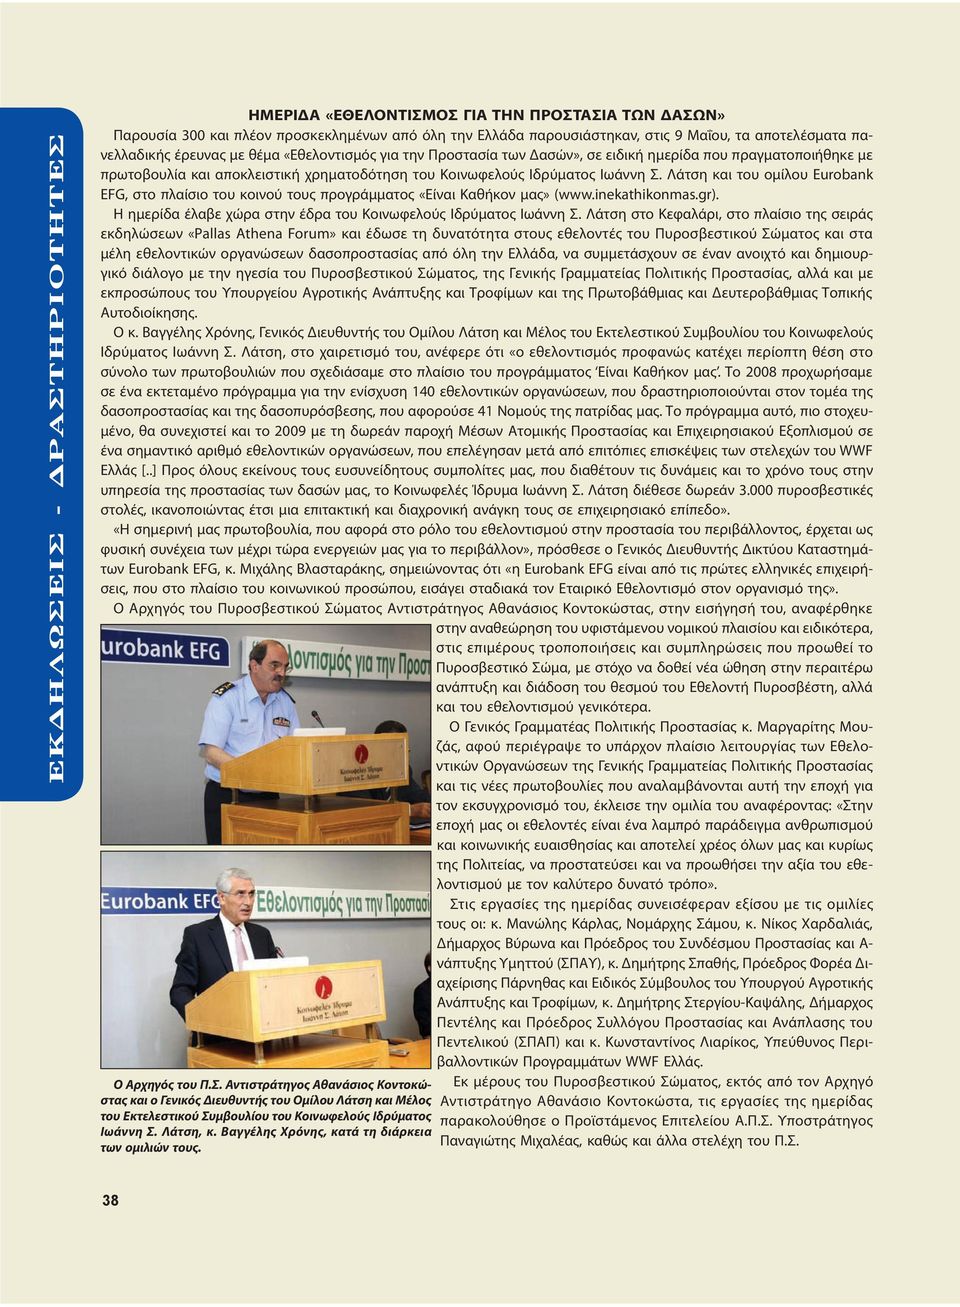 Λάτση και του ομίλου Eurobank EFG, στο πλαίσιο του κοινού τους προγράμματος «Είναι Καθήκον μας» (www.inekathikonmas.gr). Η ημερίδα έλαβε χώρα στην έδρα του Κοινωφελούς Ιδρύματος Ιωάννη Σ.